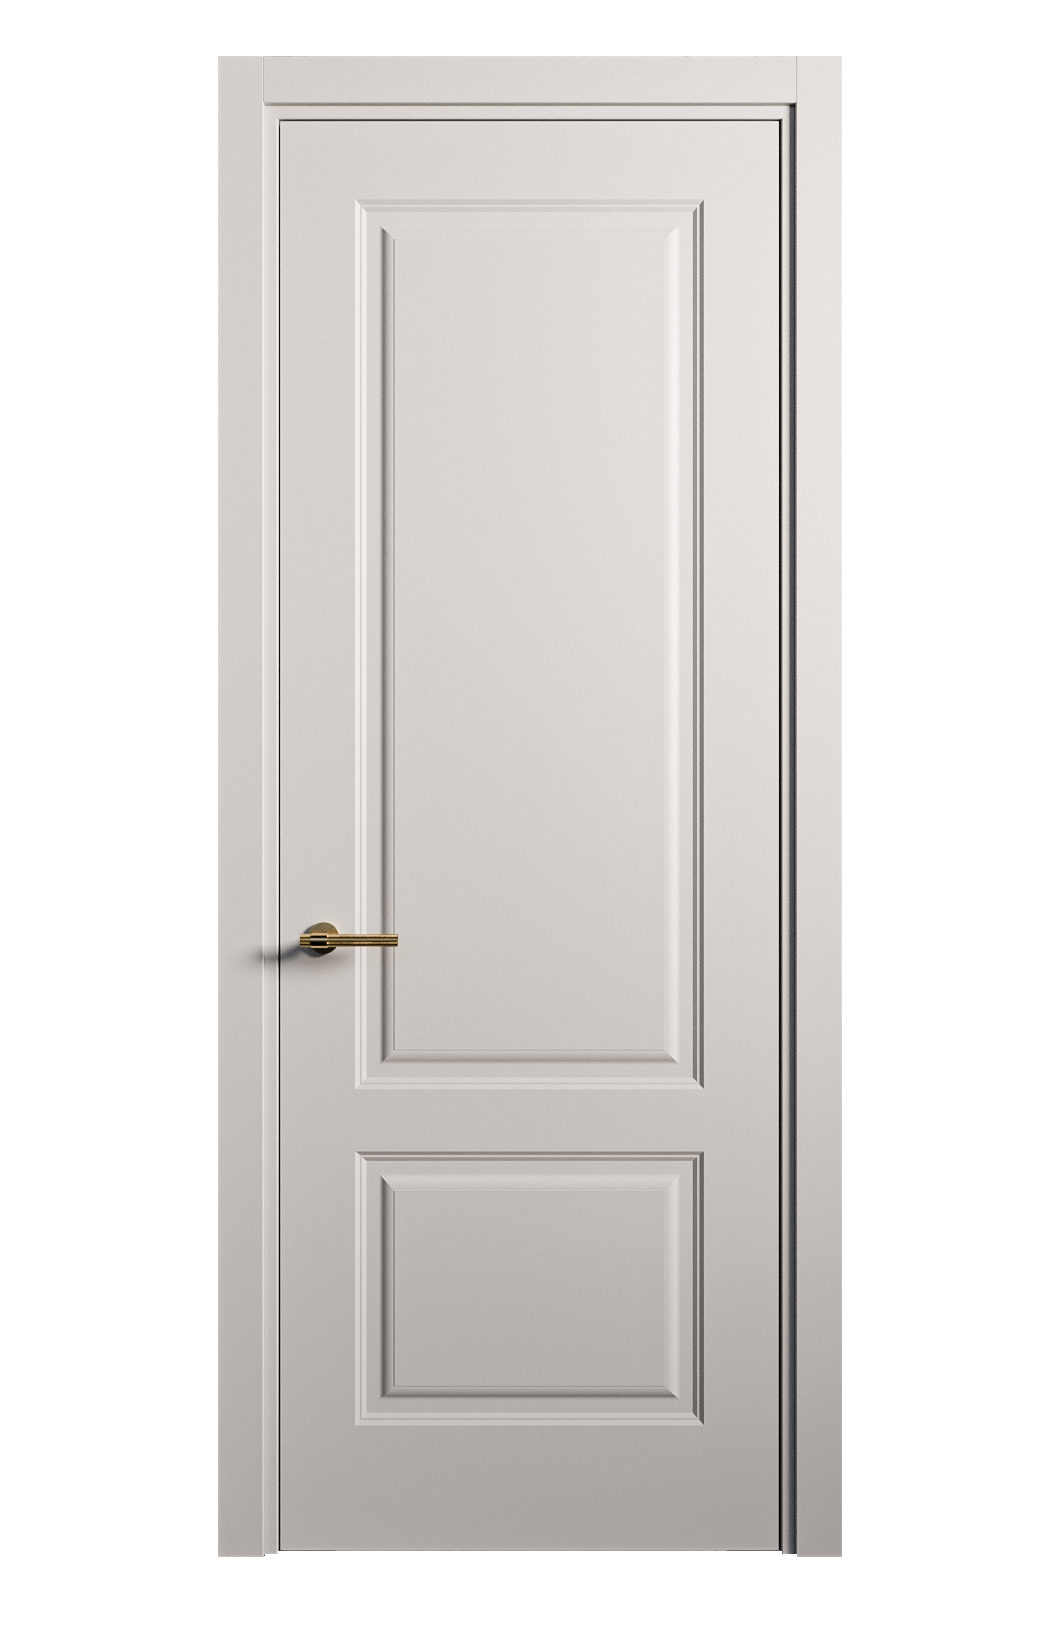 Межкомнатная дверь Вита-1 глухая эмаль ral 7047 26308